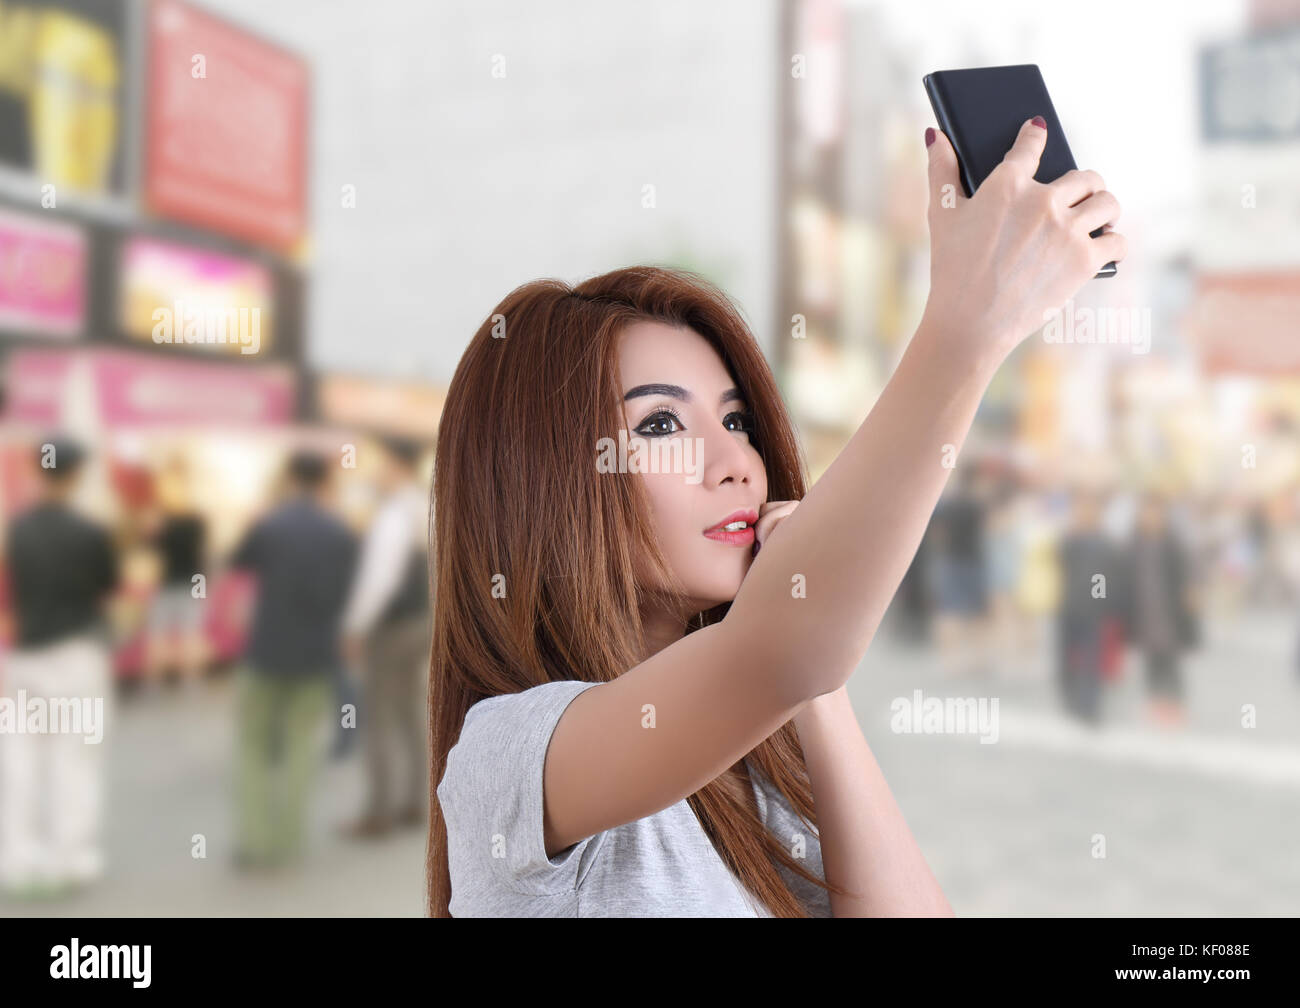 Girl Blue Dress Selfie Pose Holding Stock Vector (Royalty Free) 1375982642  | Shutterstock